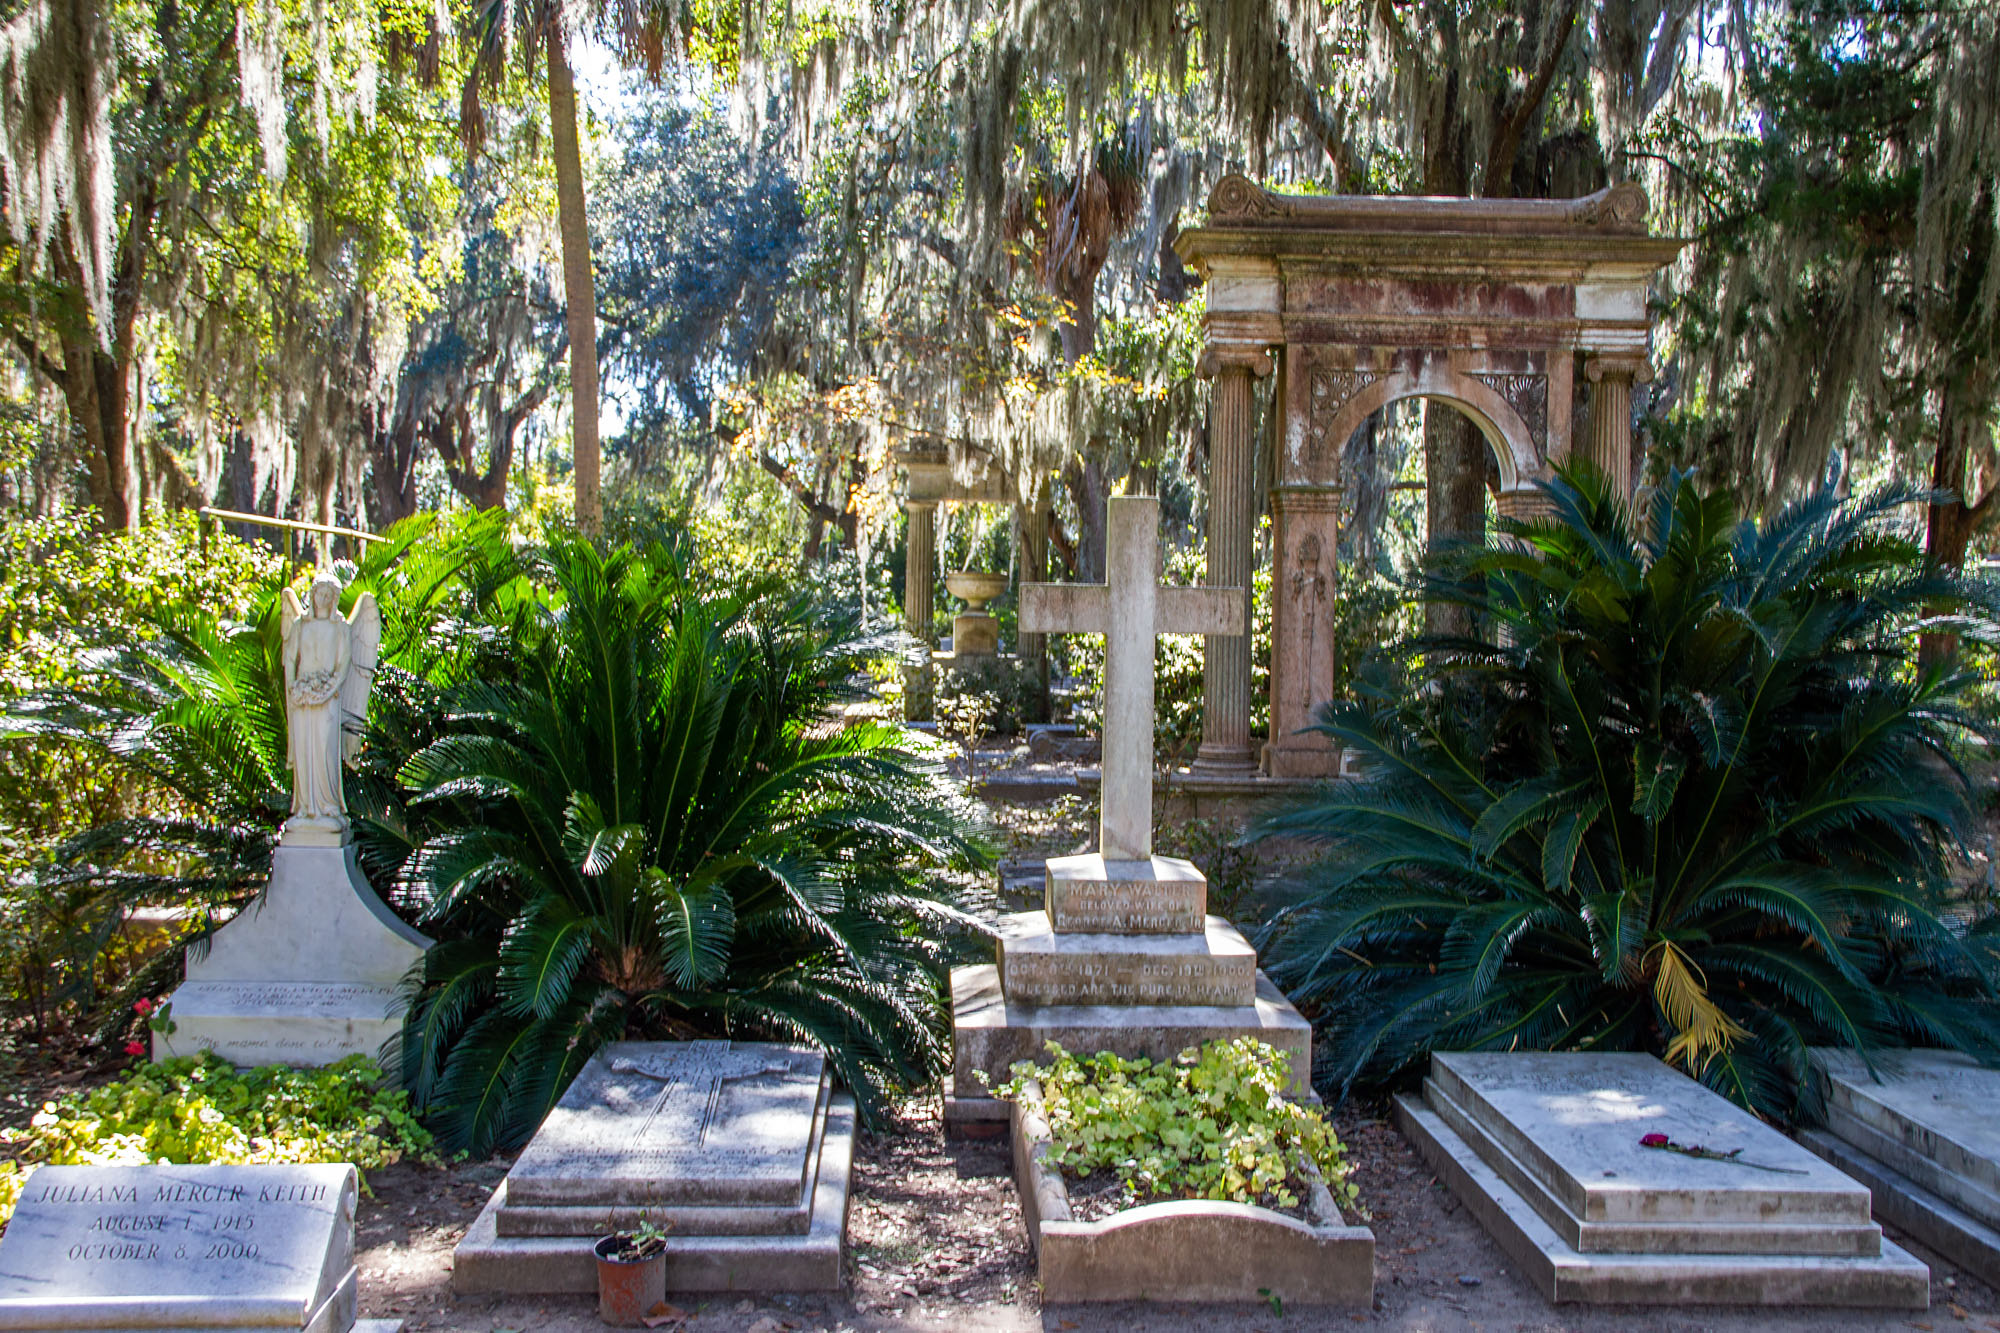 Bonaventure Cemetery Graves in Savannah